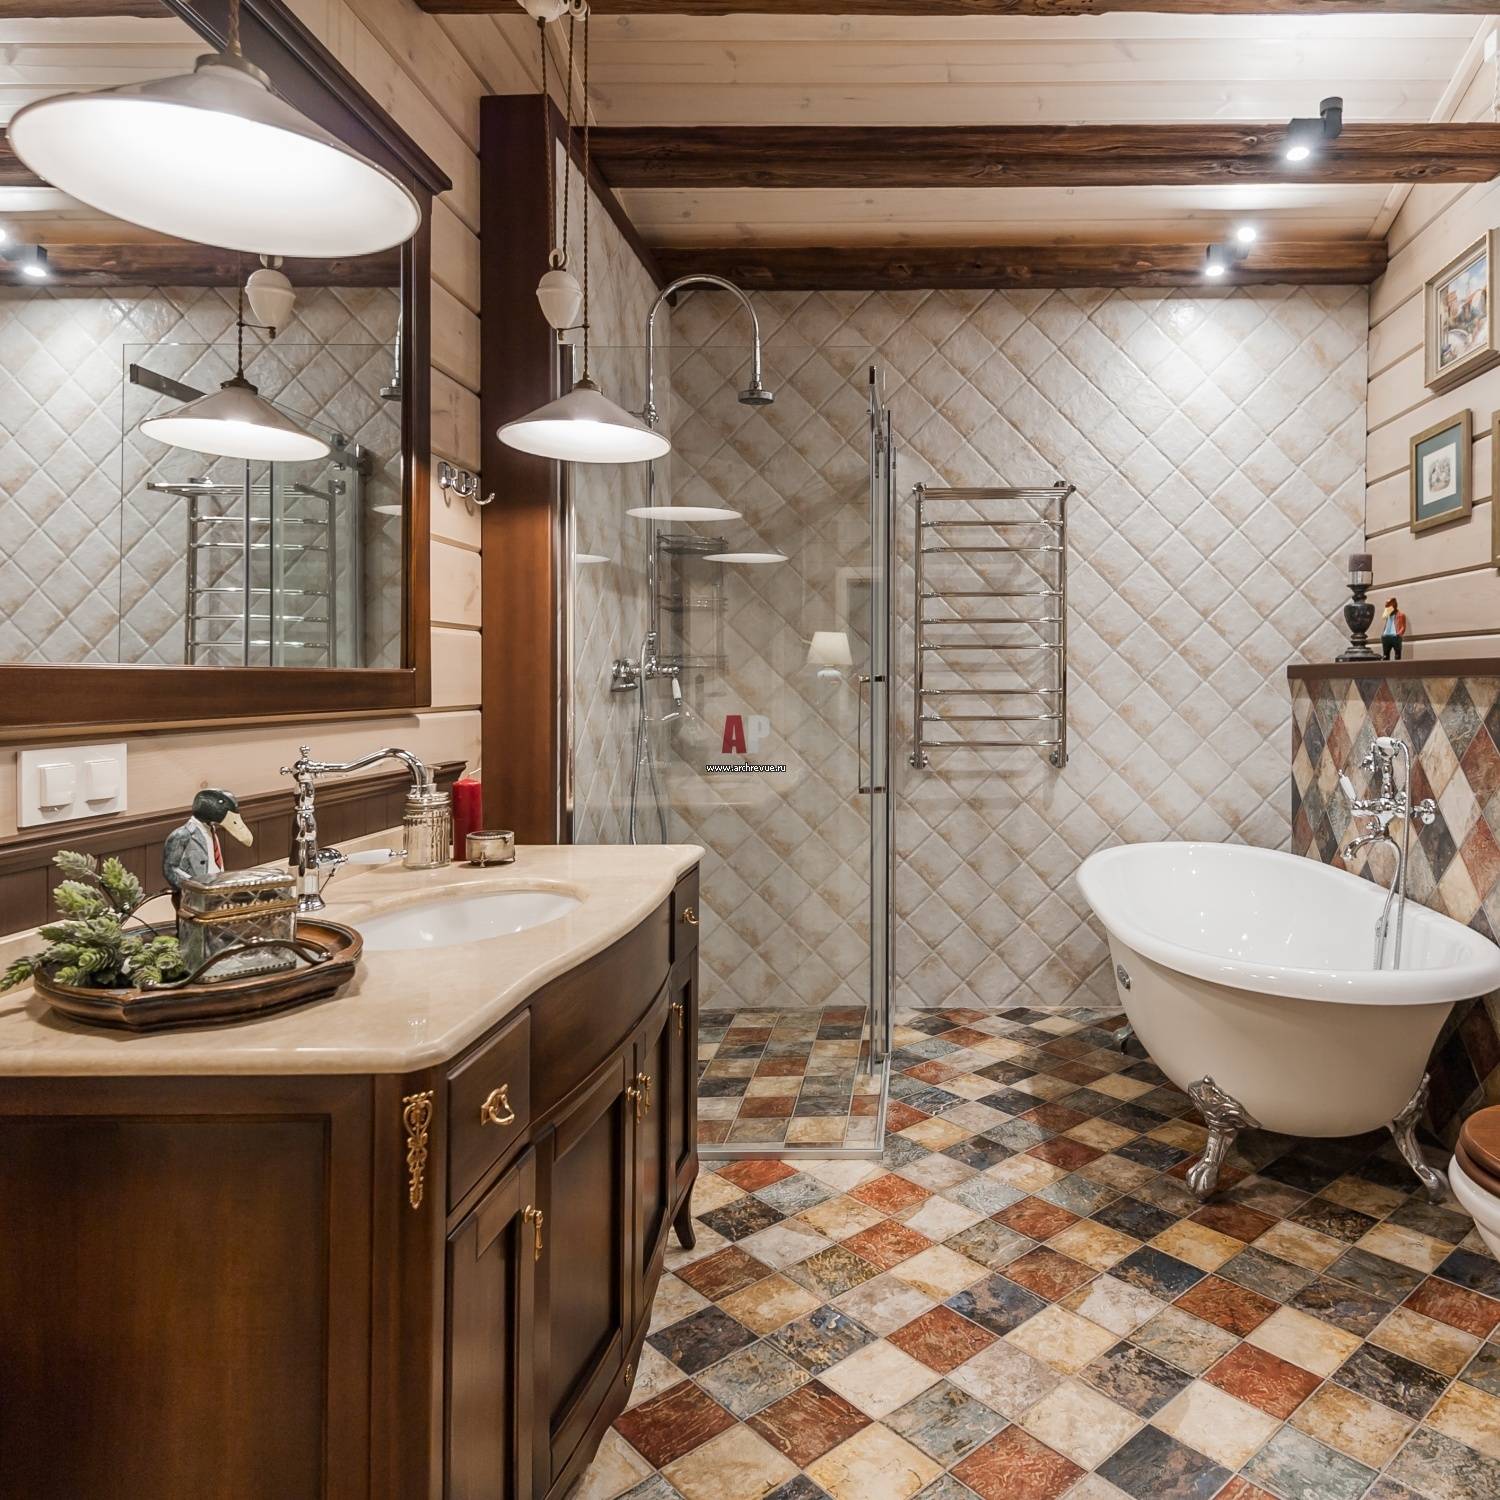 Плитка в стиле прованс важные характеристики и дизайн керамики для кухни и ванной комнаты - 19 фото